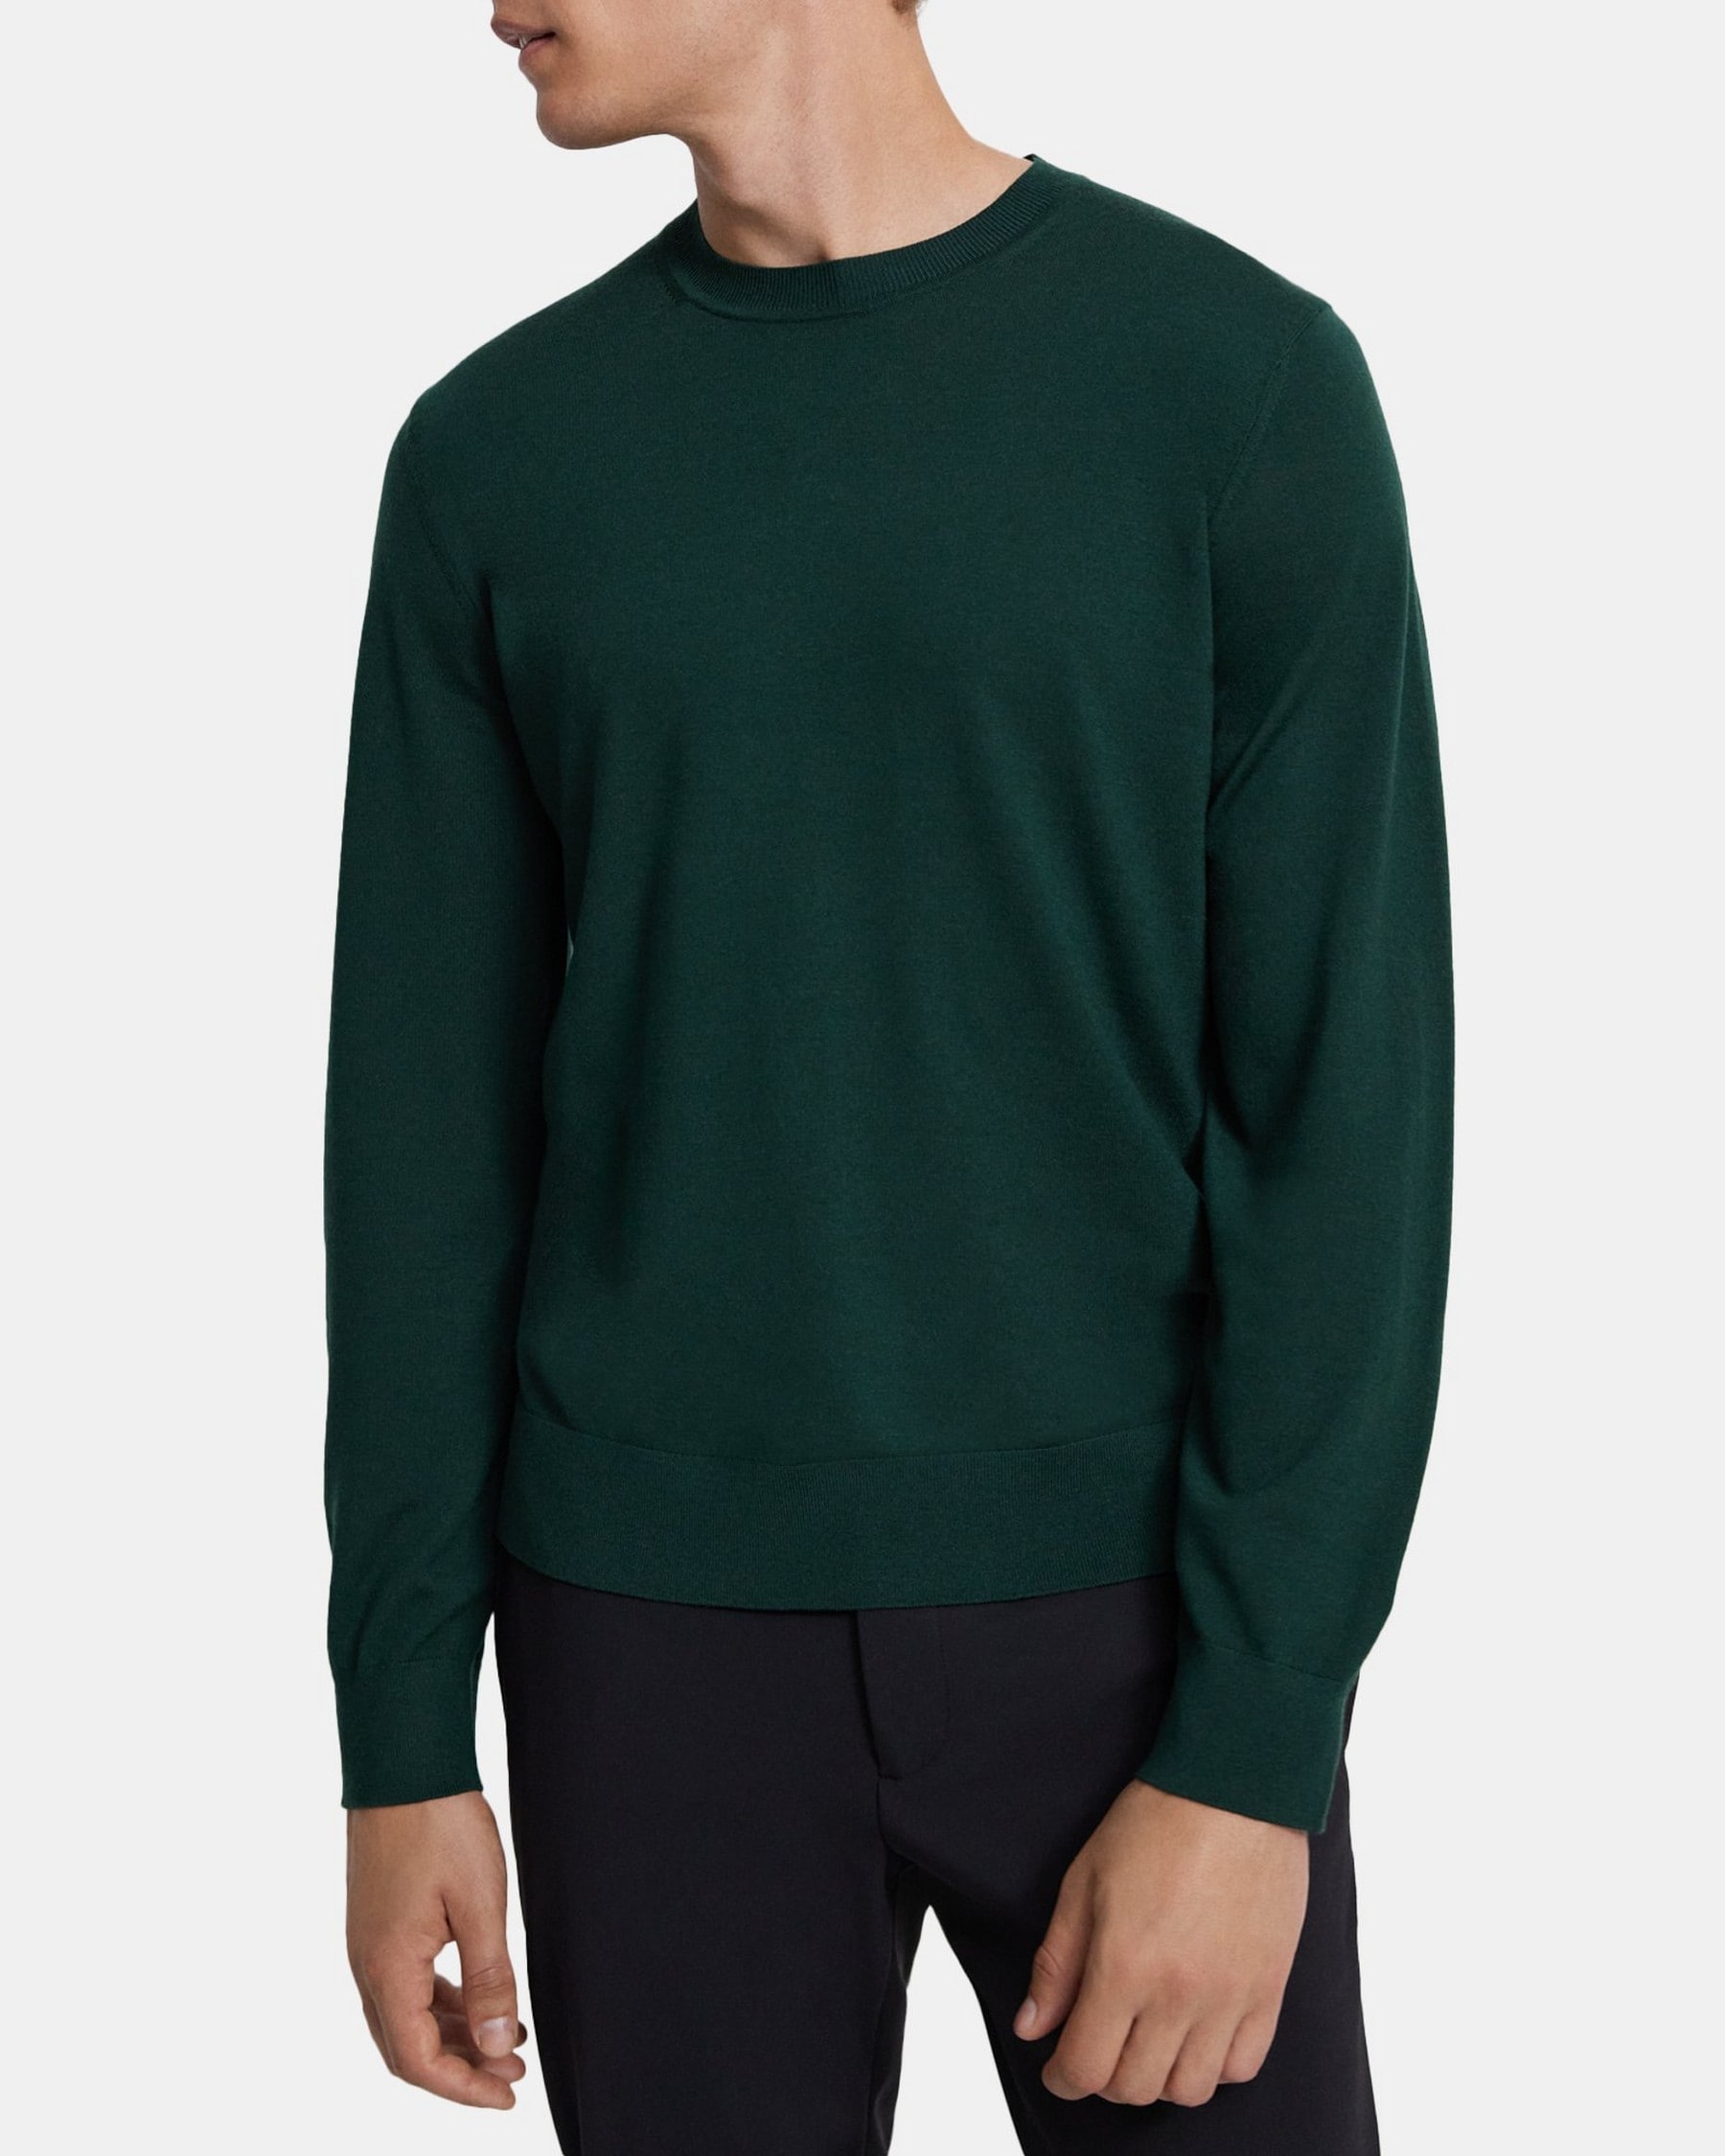 띠어리 Theory Crewneck Sweater in Merino Wool,PINE